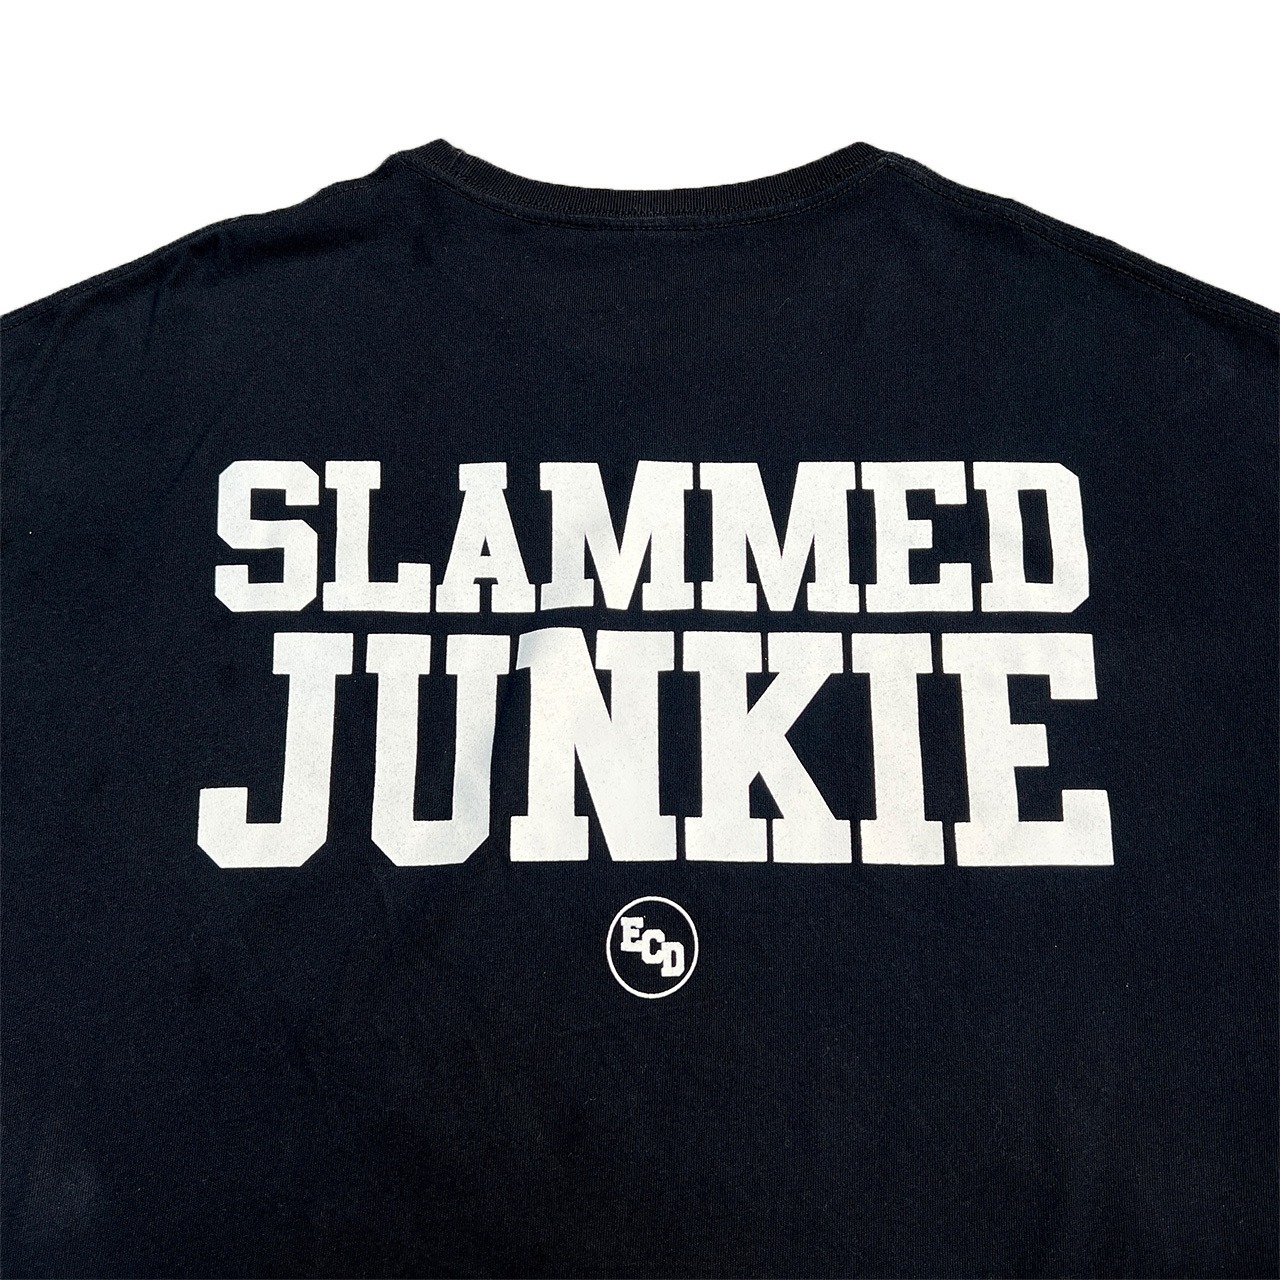 SLAMMED JUNKIE S/S Tee（Big silhouette）